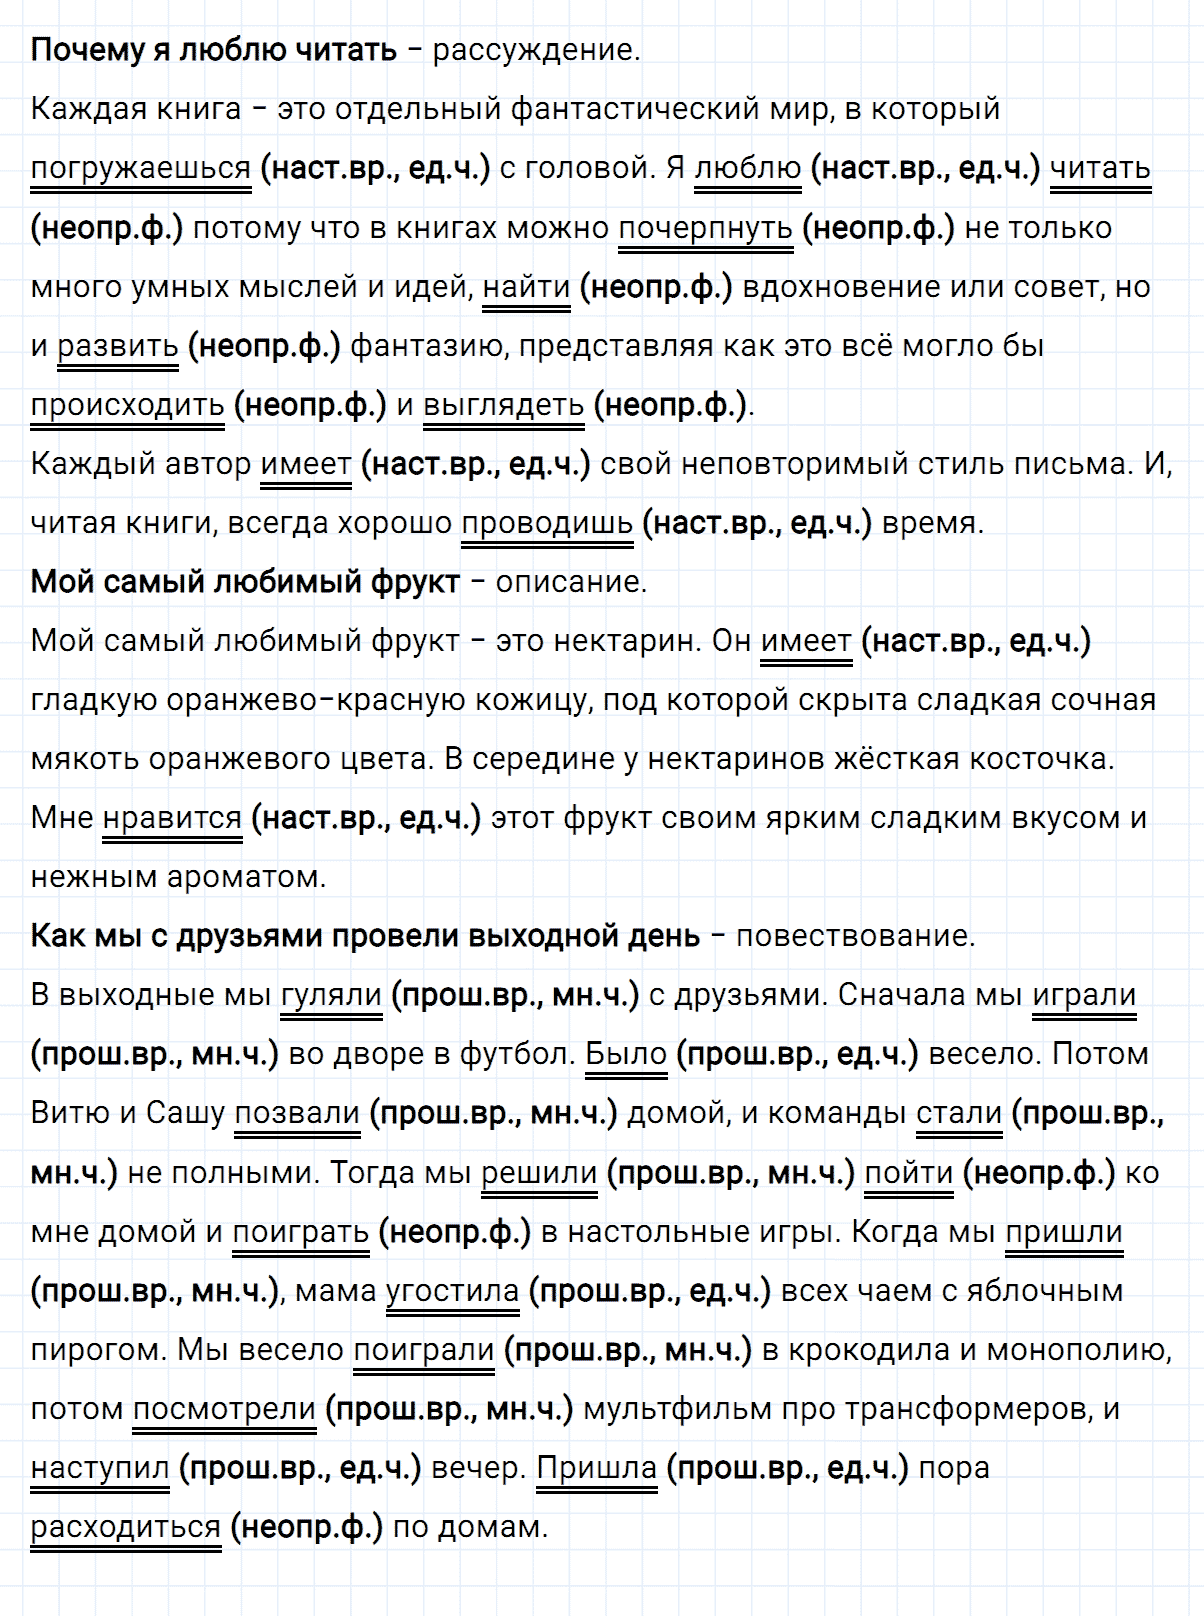 гдз 3 класс номер 147 русский язык Климанова, Бабушкина часть 2